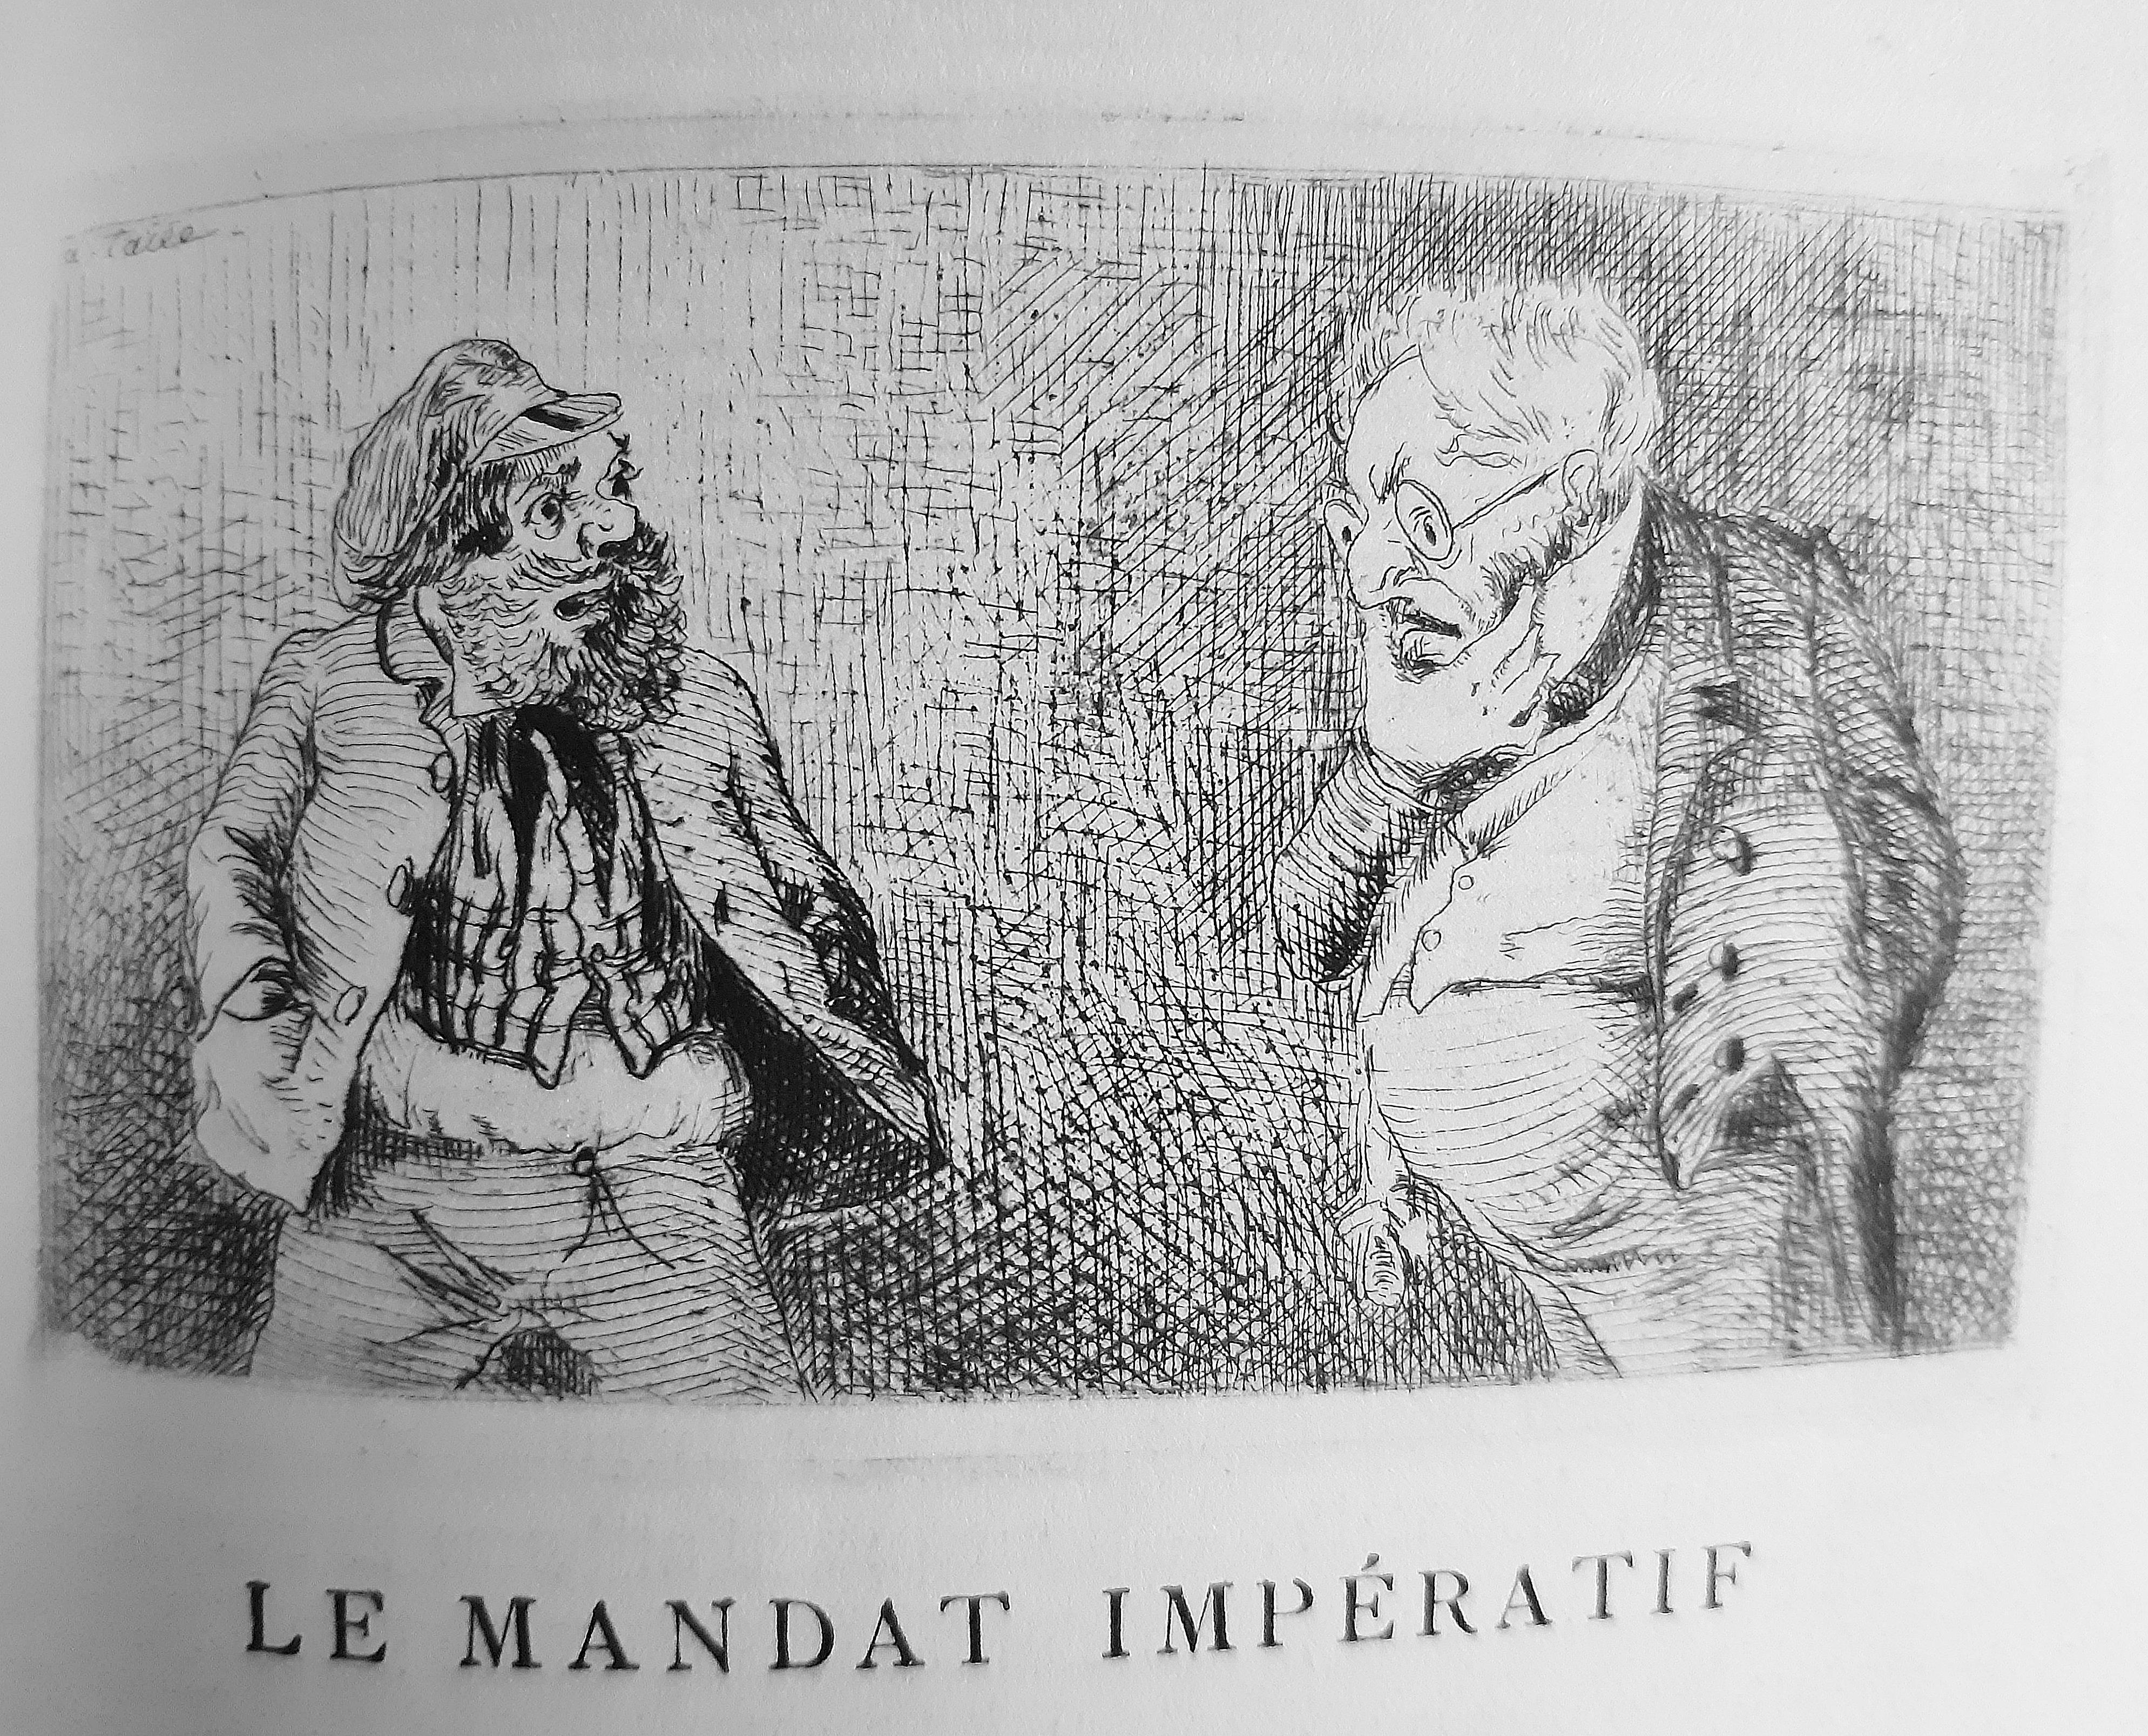 Théâtre des Pupazzi - Rare Book Illustrated by L. Lemercier de Neuville - 1876